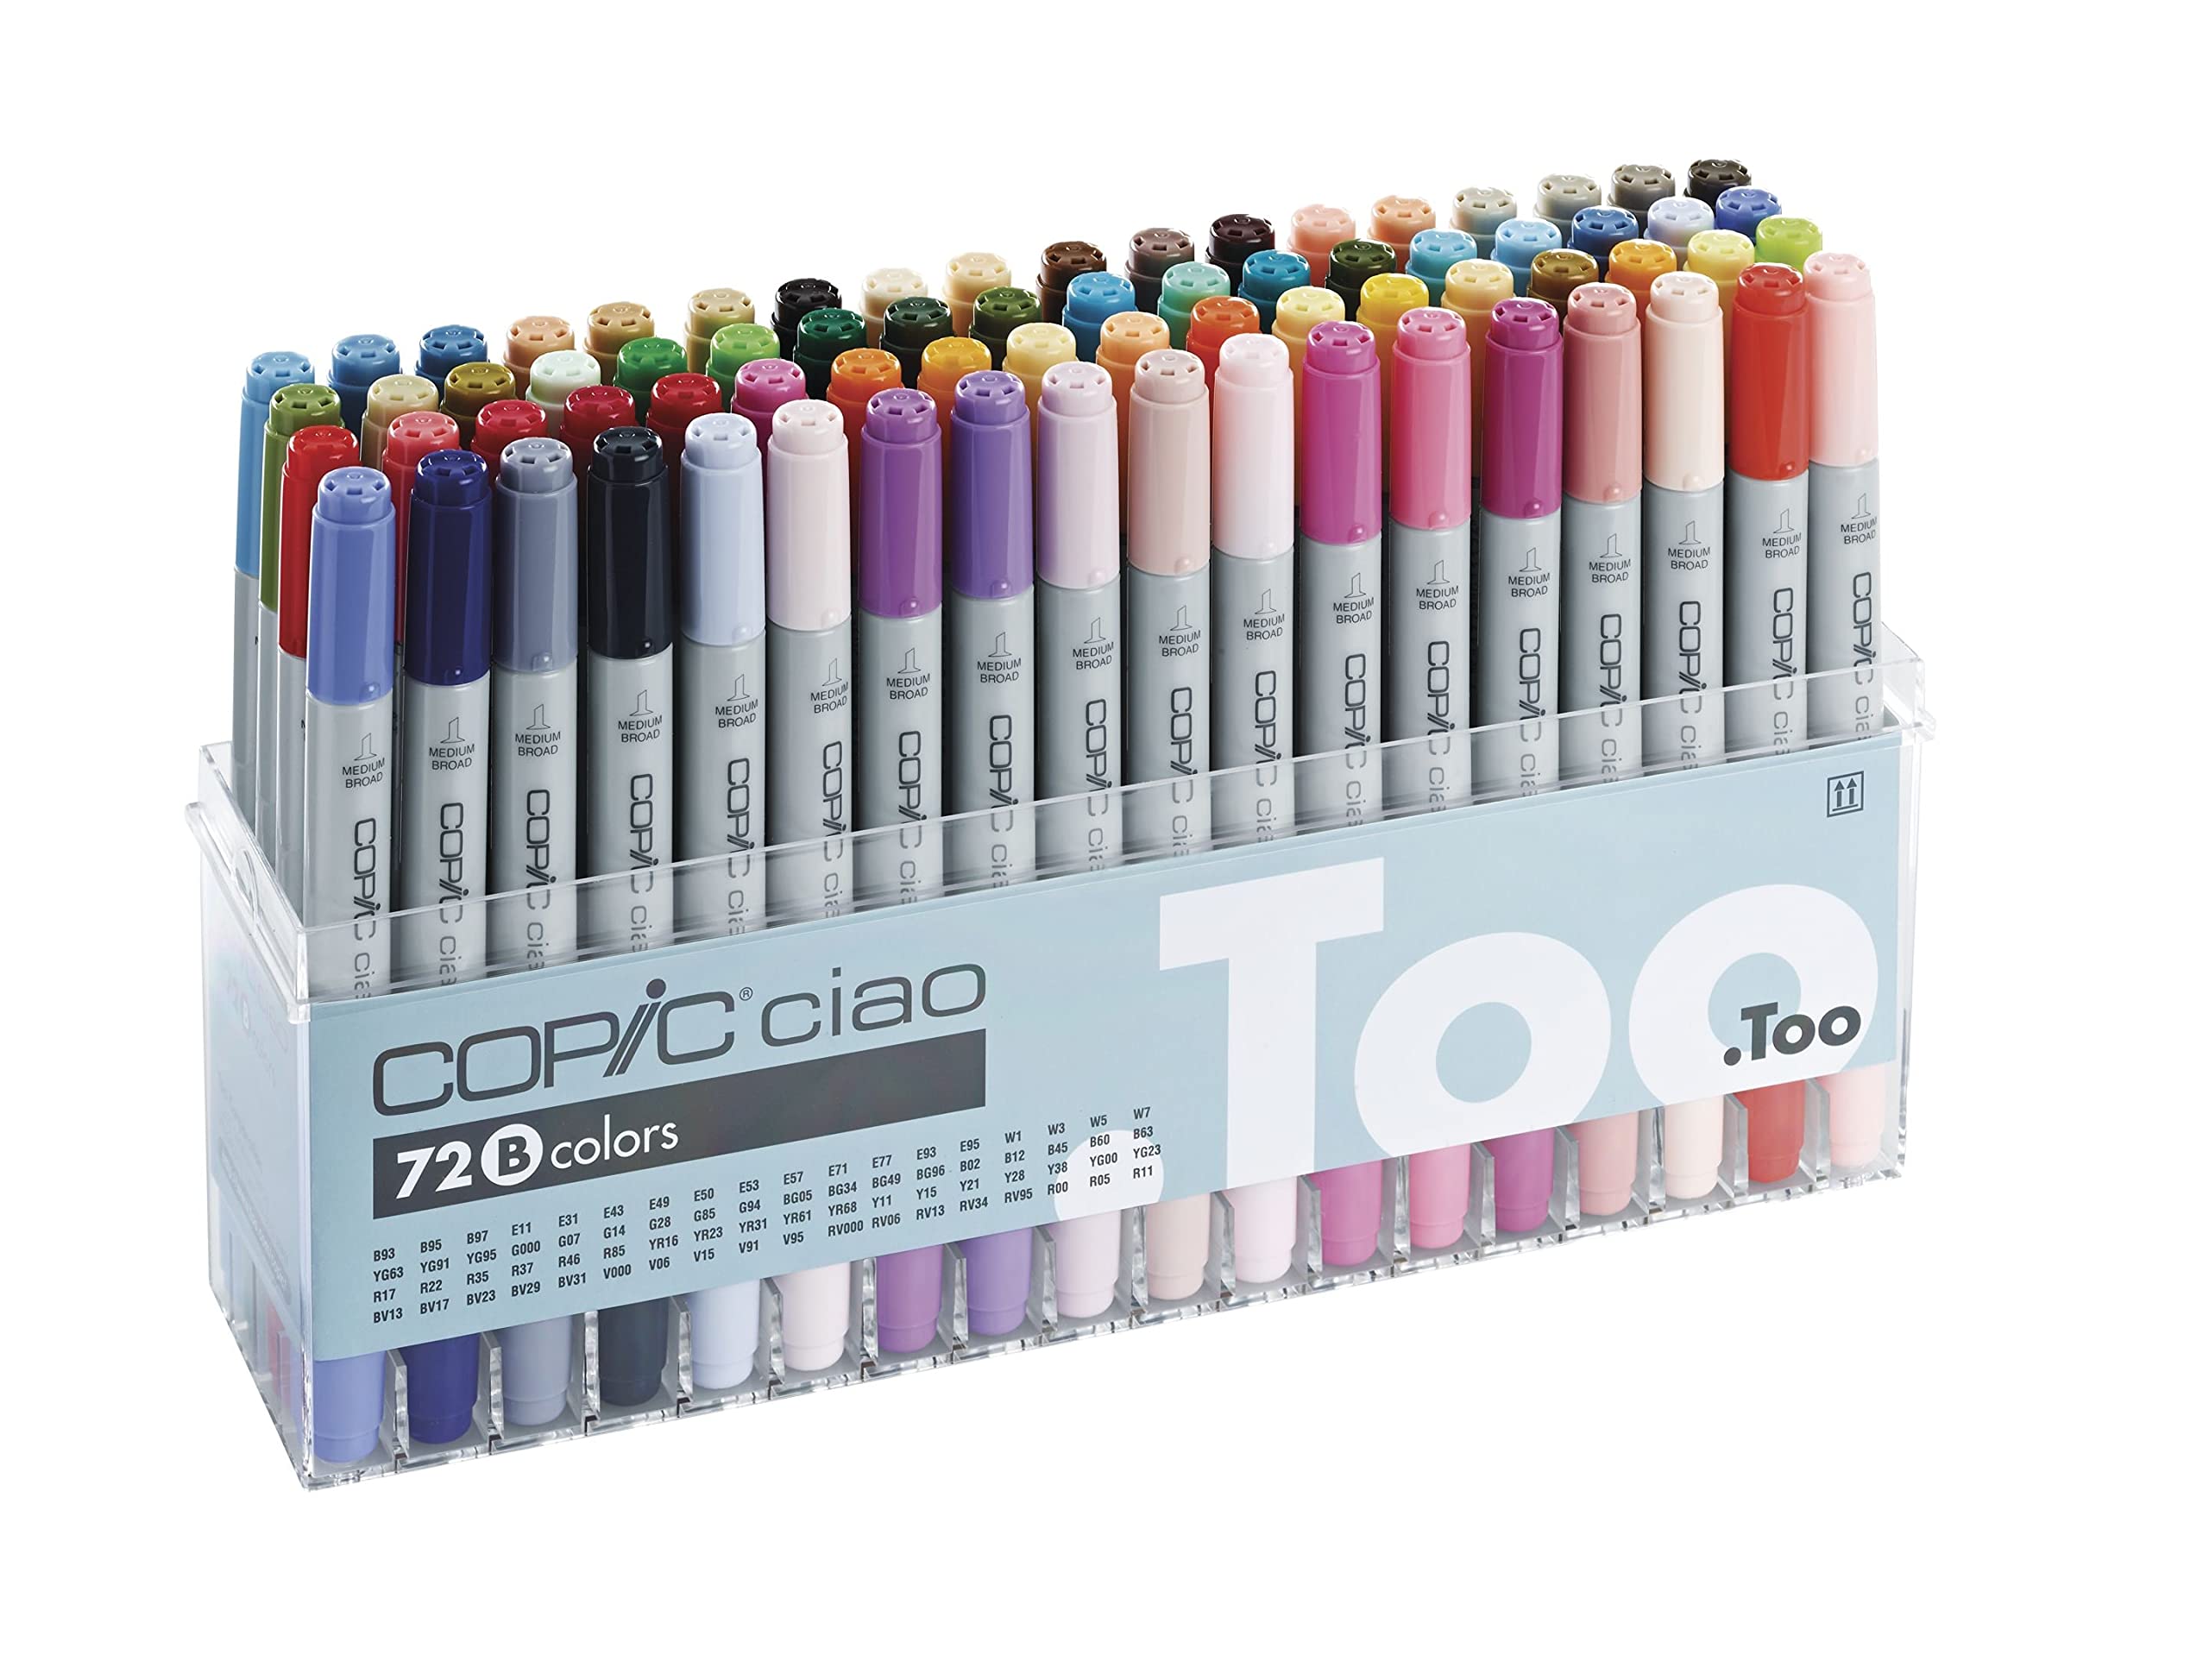 COPIC 22075161 Ciao Marker Set B mit 72 Farben im praktischen Acryl-Display zur Aufbewahrung und einfachen Entnahme, sortiert, variabel